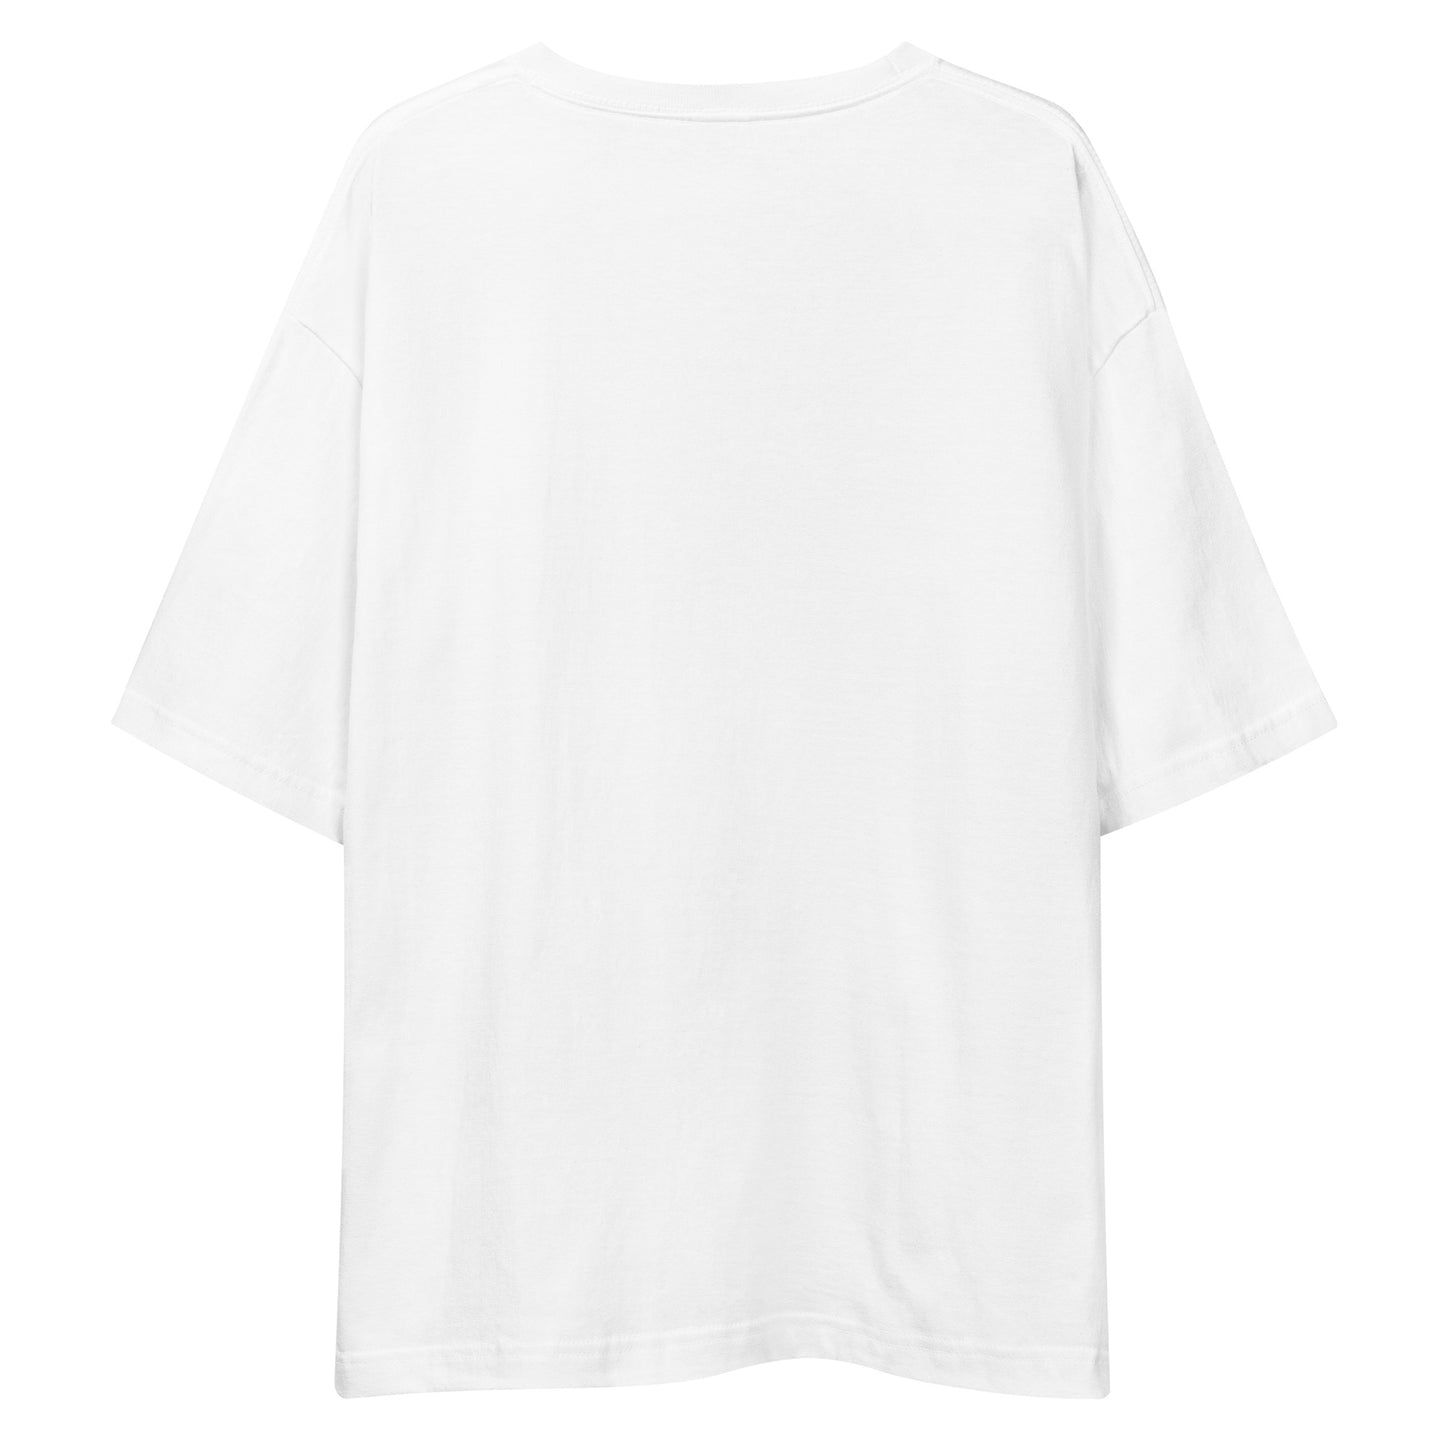 E226 - เสื้อยืด/ภาพเงาใหญ่ (กระโดดอวกาศ/ผู้หญิง : สีขาว/สีดำ)